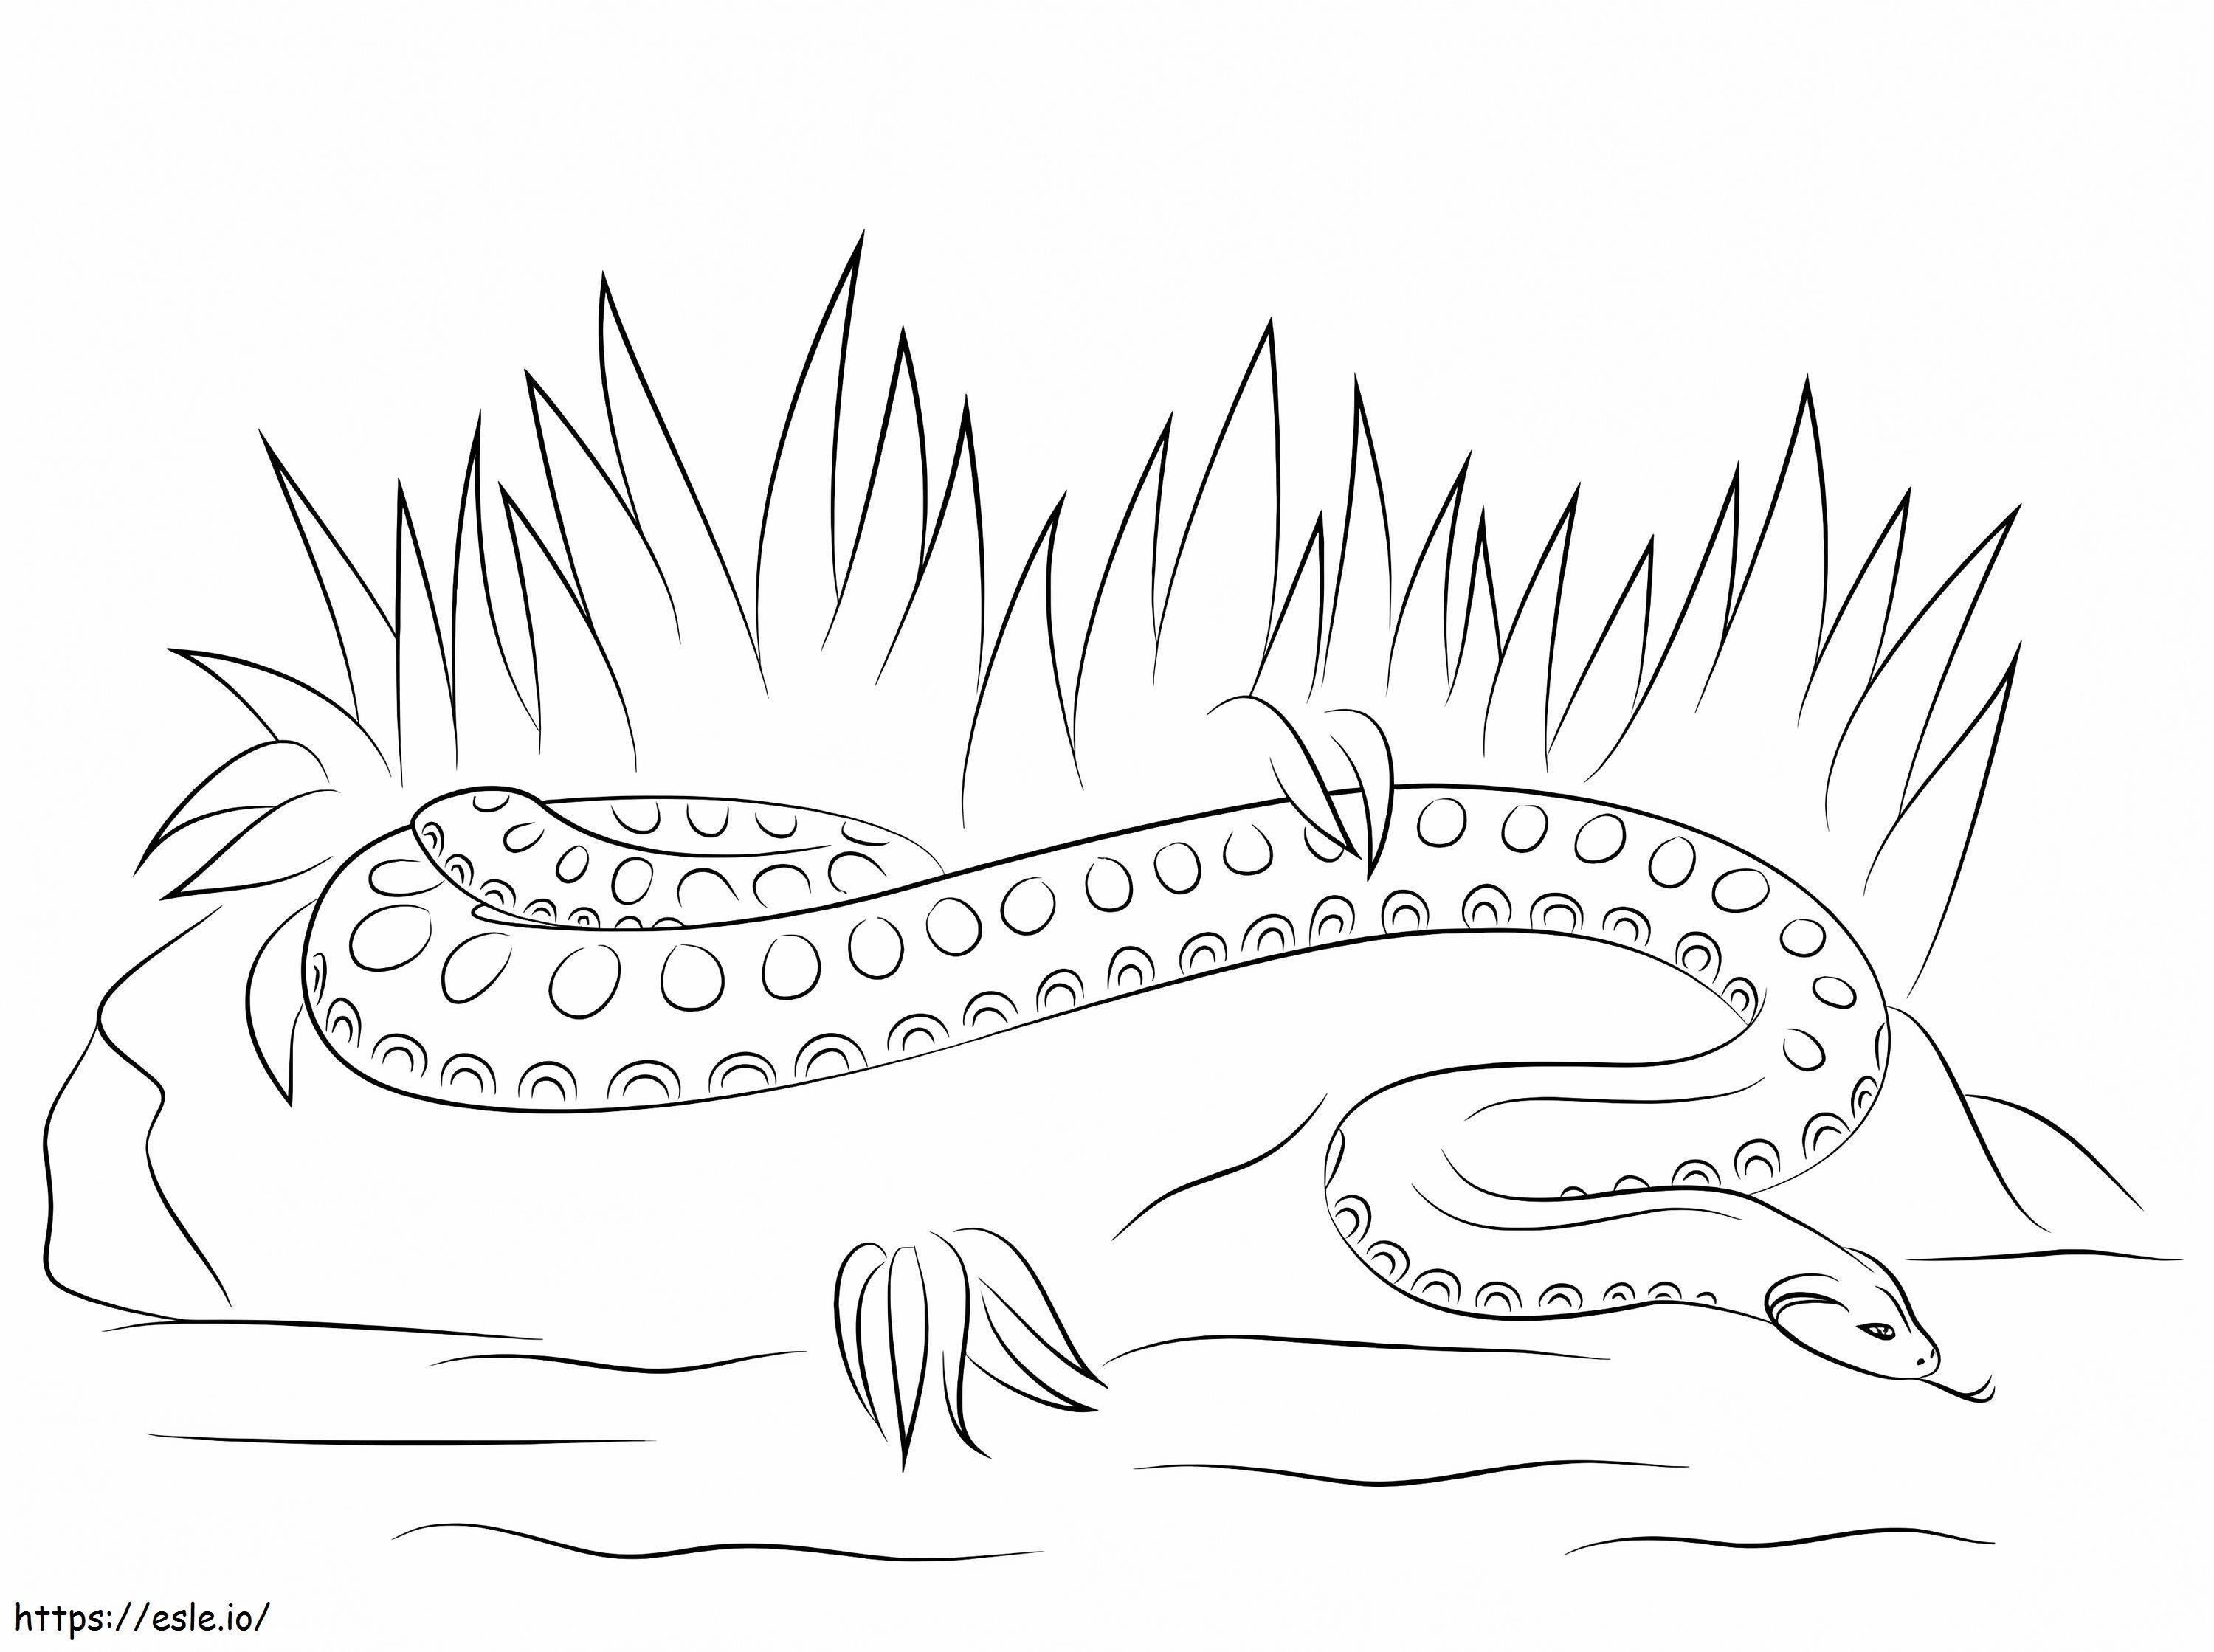 Anaconda semplice da colorare